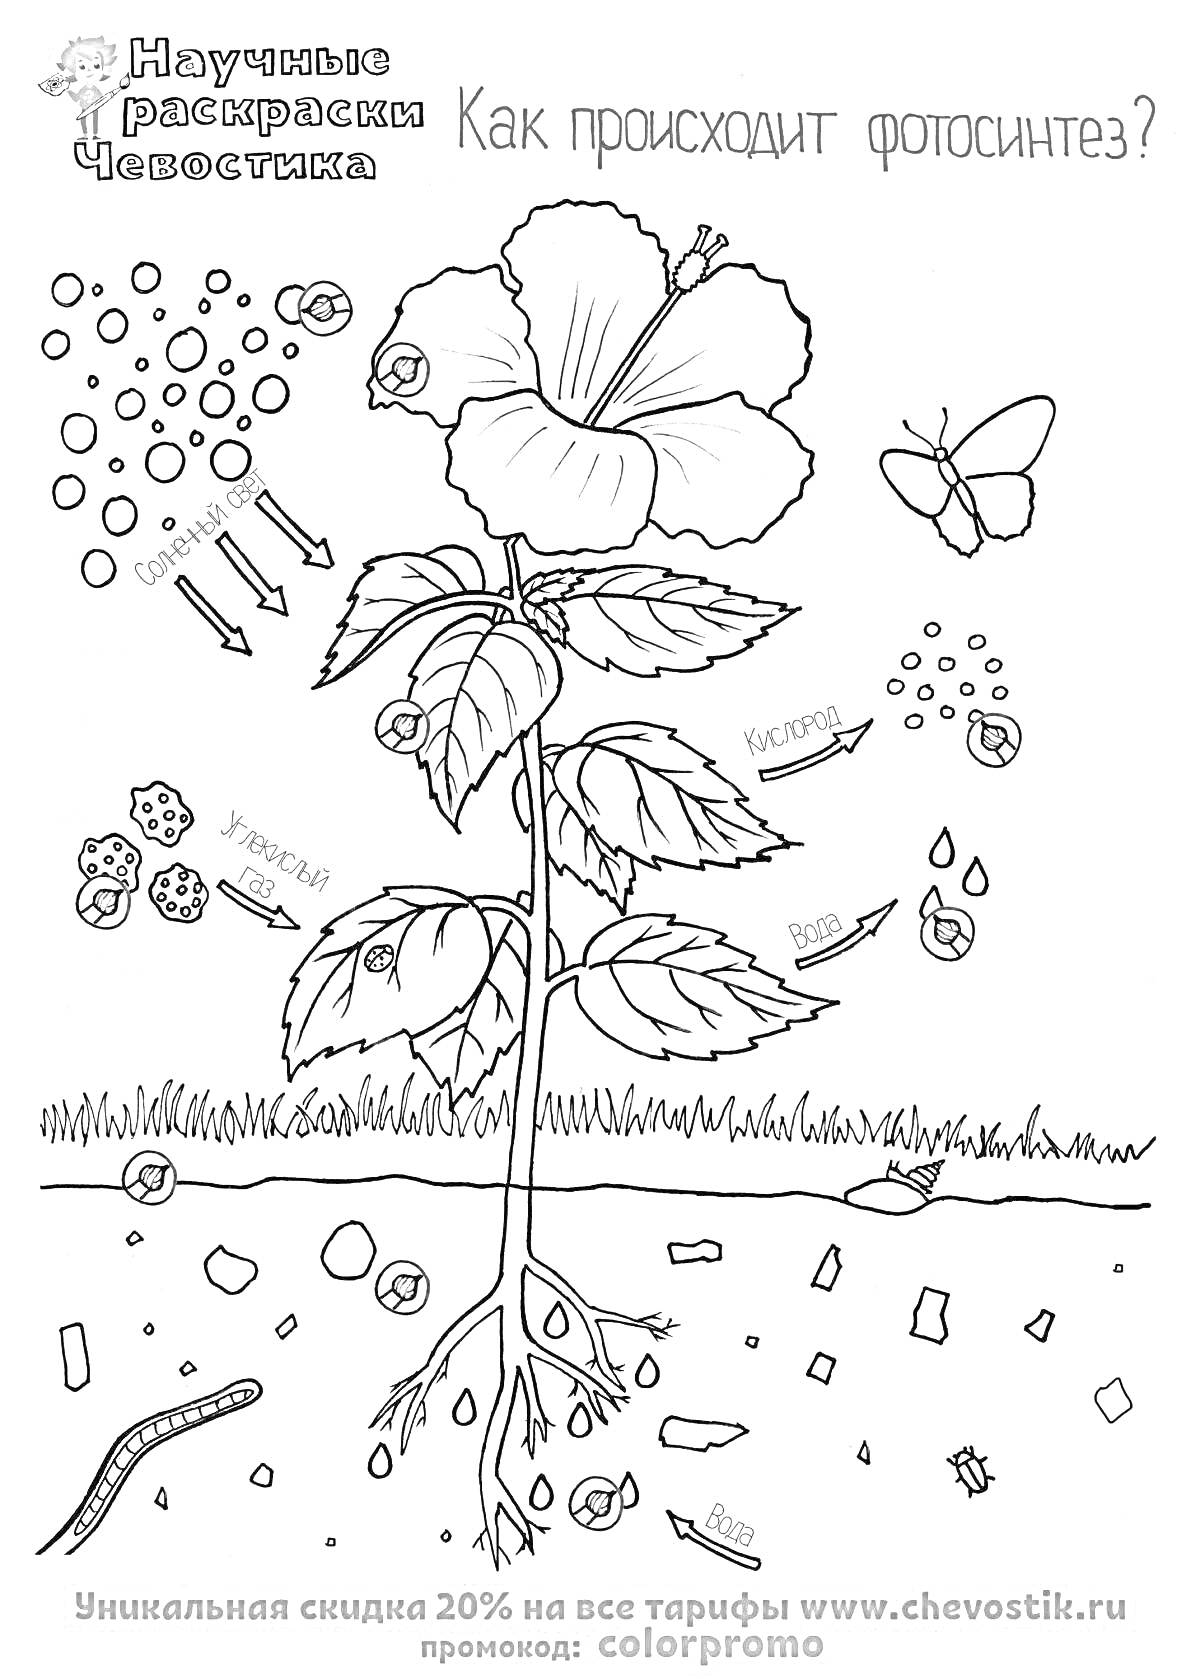 Раскраска Как происходит фотосинтез? Цветок, листья, корни растений, бабочка, листья падают, трава, стрелки, солнце и вода, химические элементы